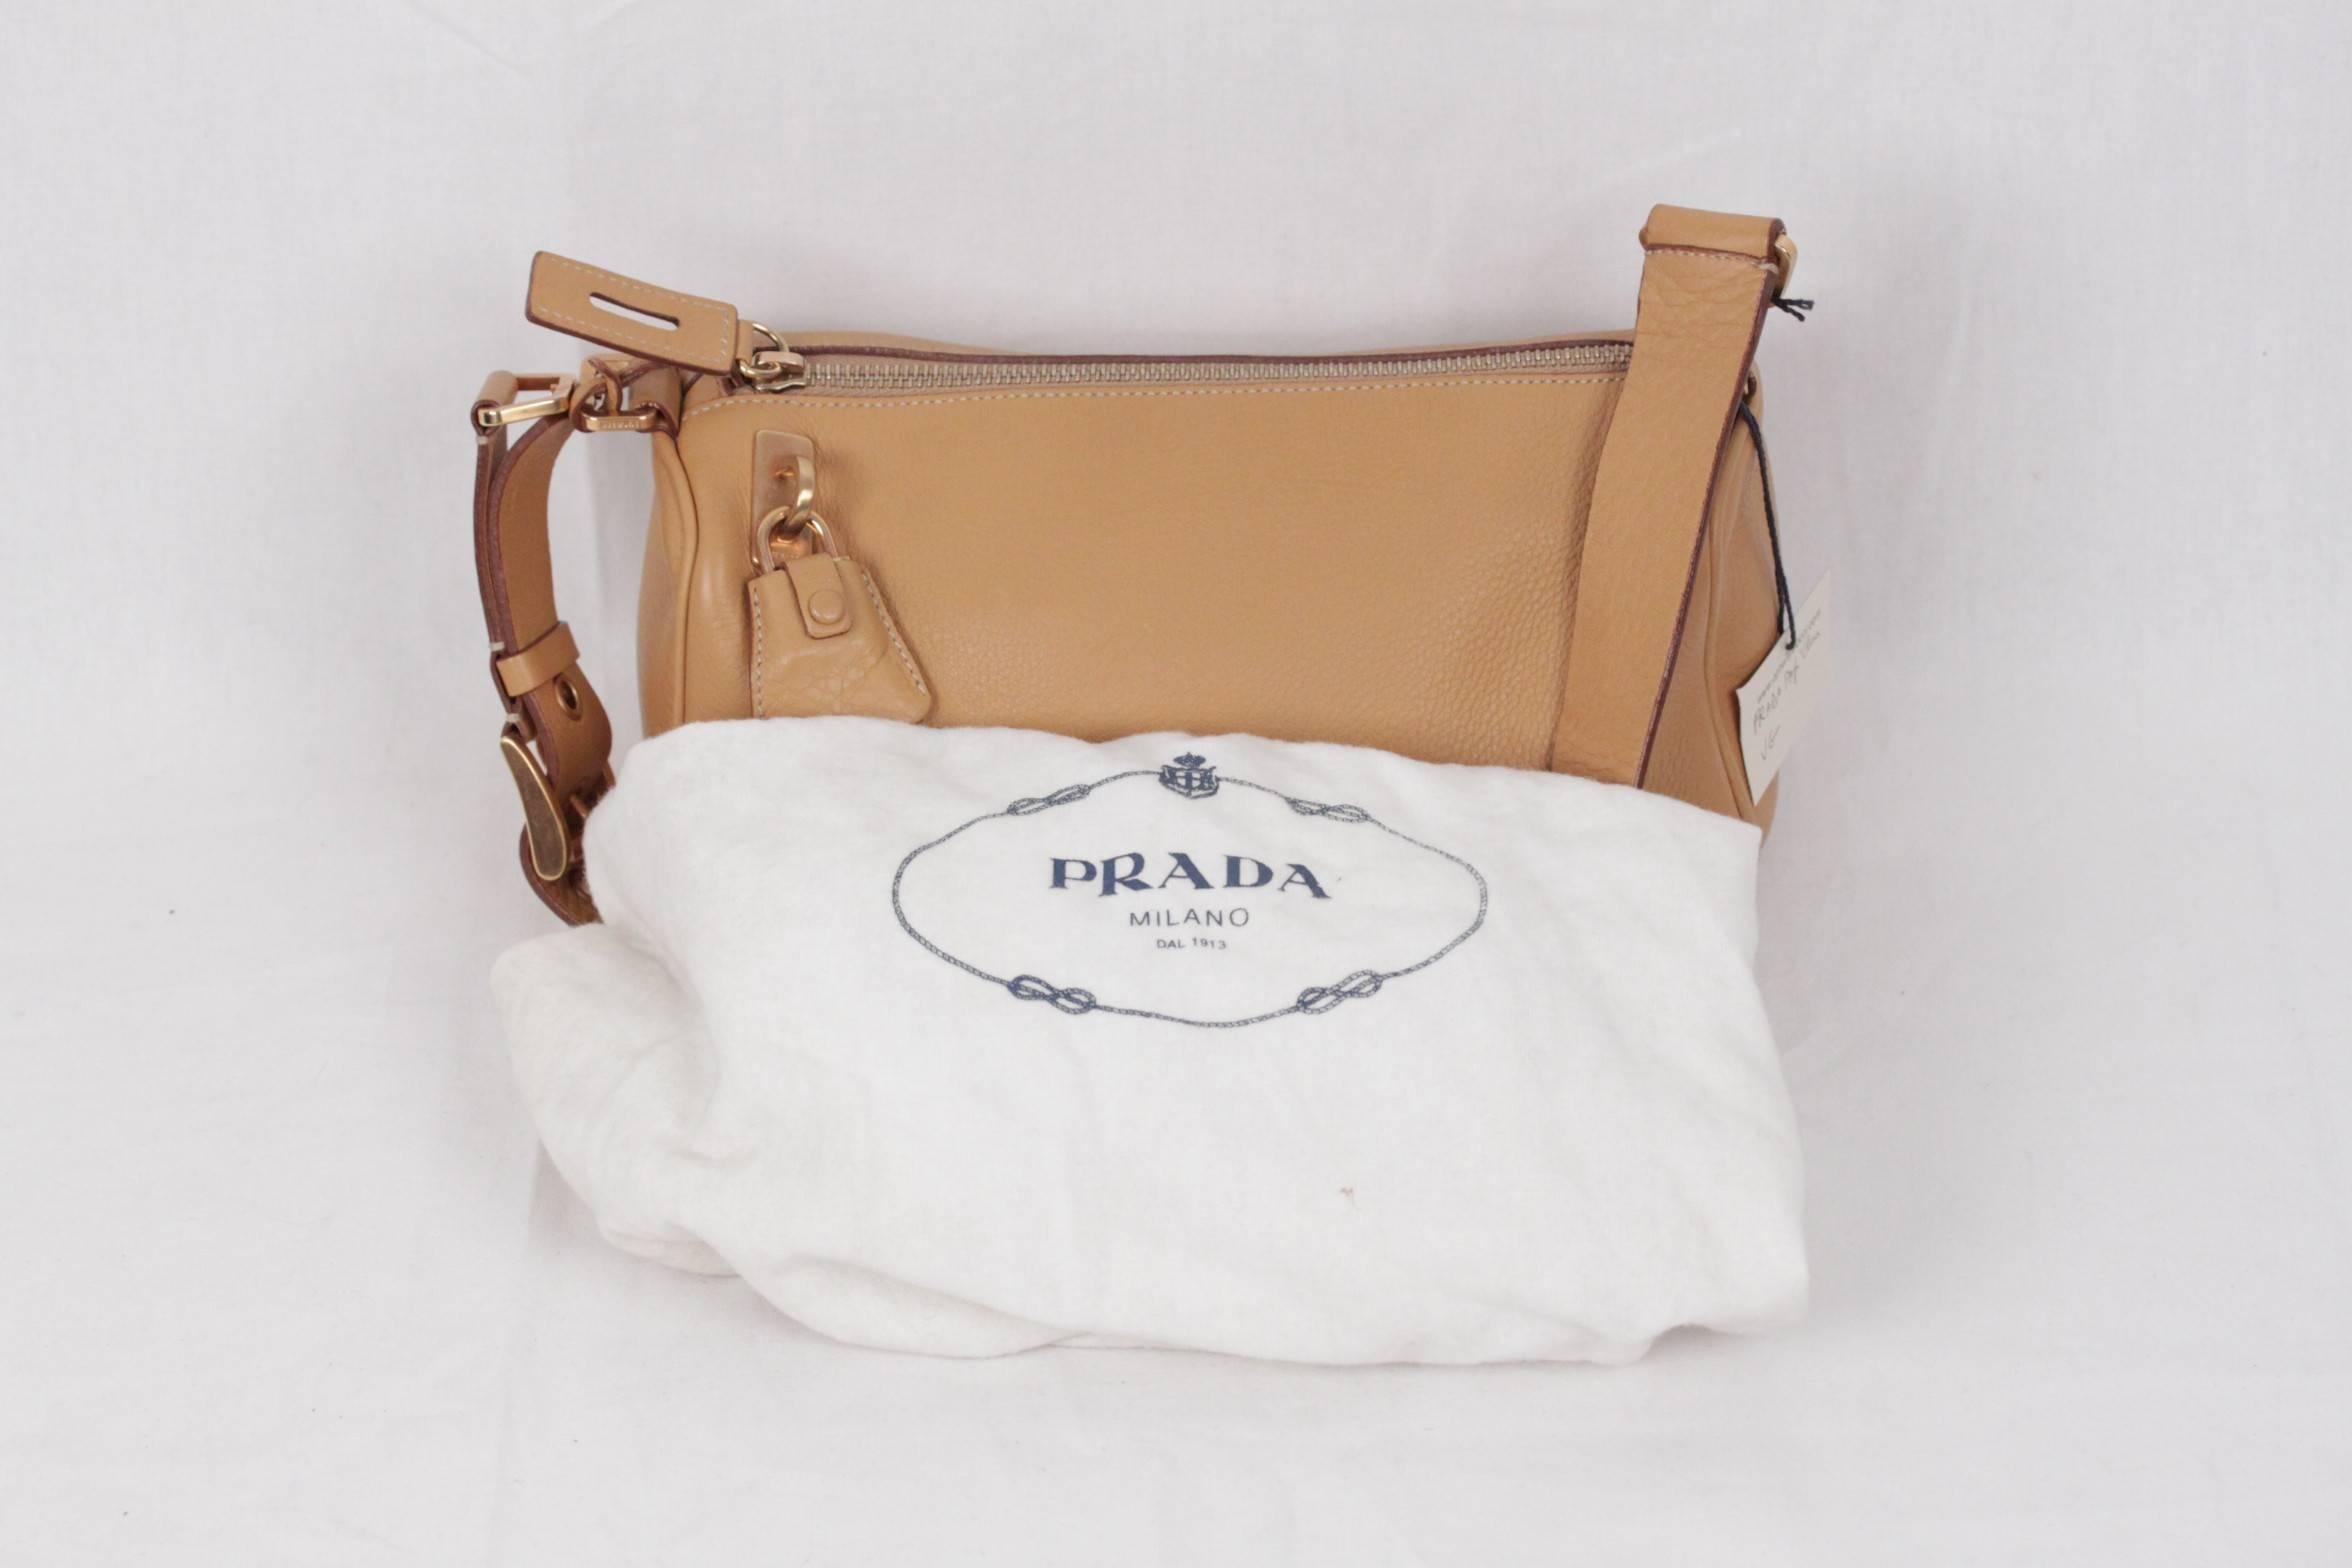 PRADA Tan Leather SHOULDER BAG Handbag w/ PADLOCK 1